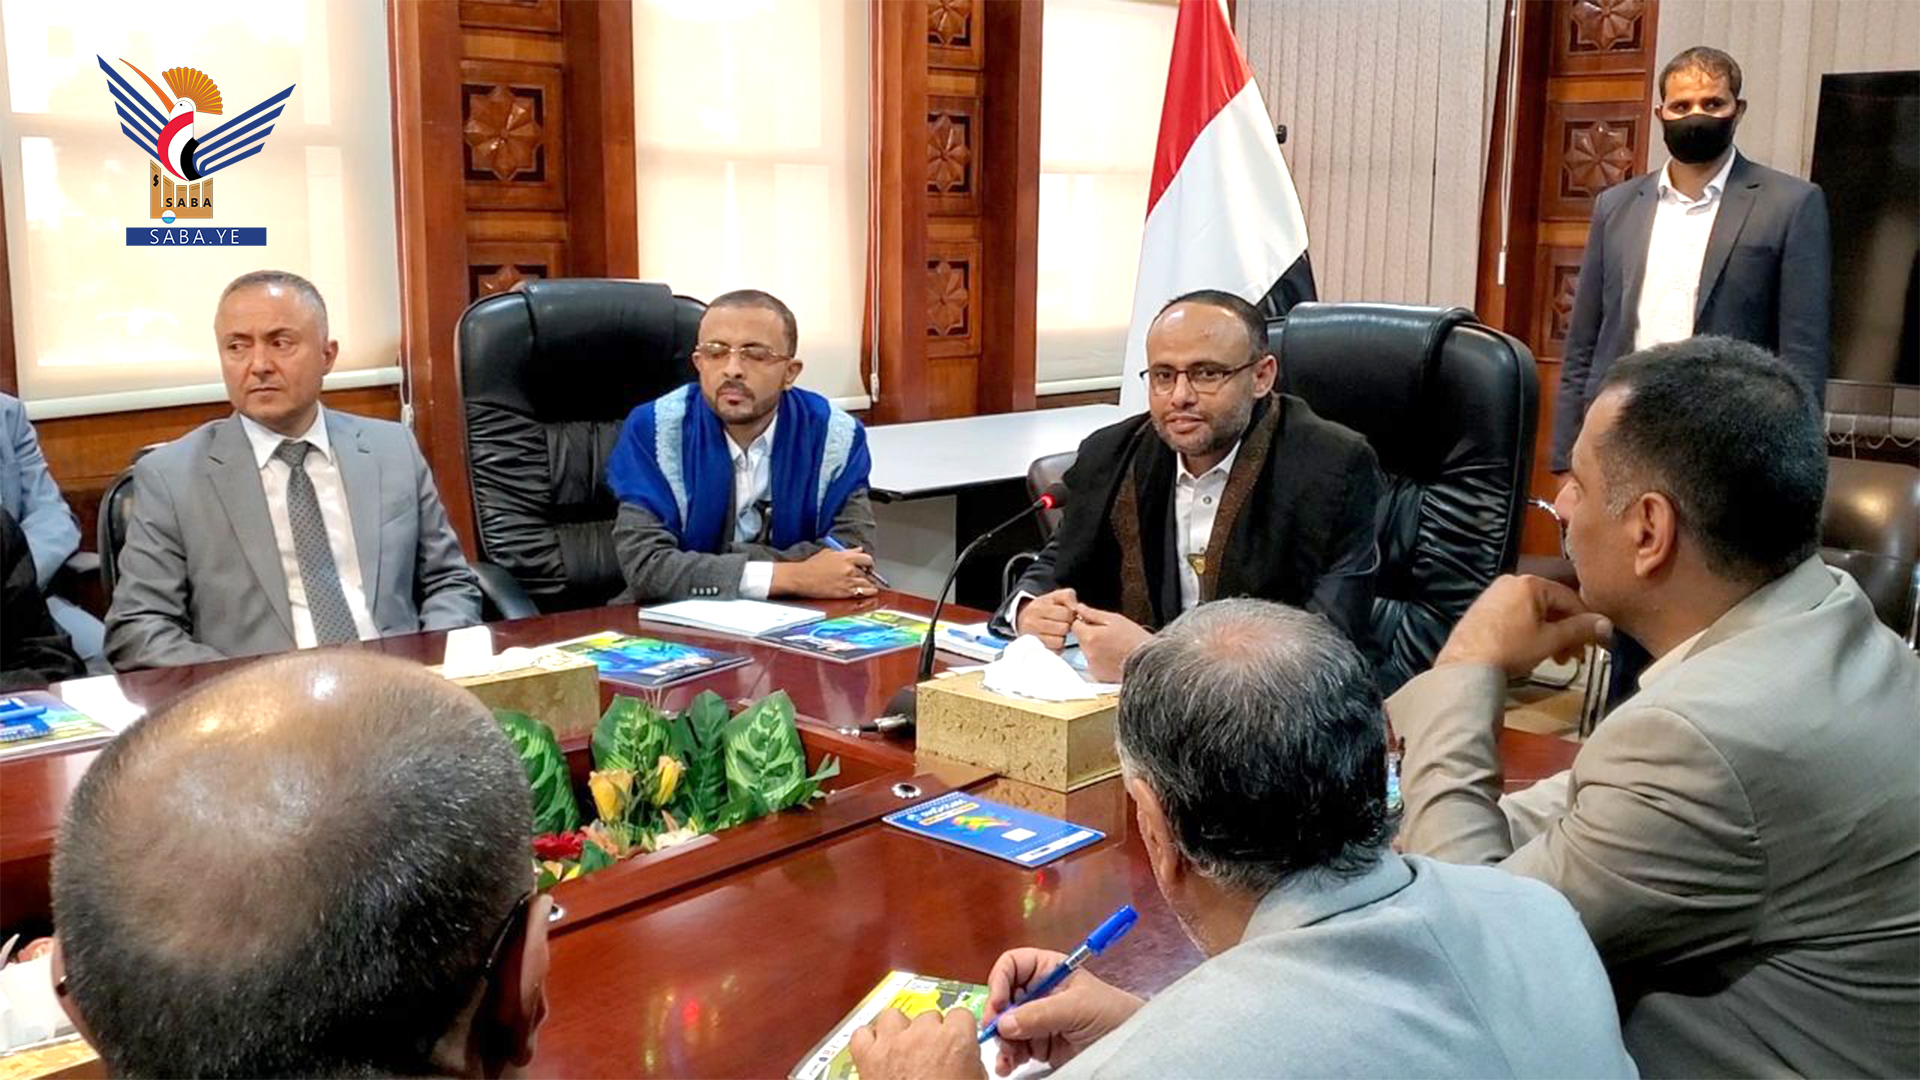 Le président Al-Mashat tient une réunion avec le secteur bancaire à la Banque centrale de Sanaa